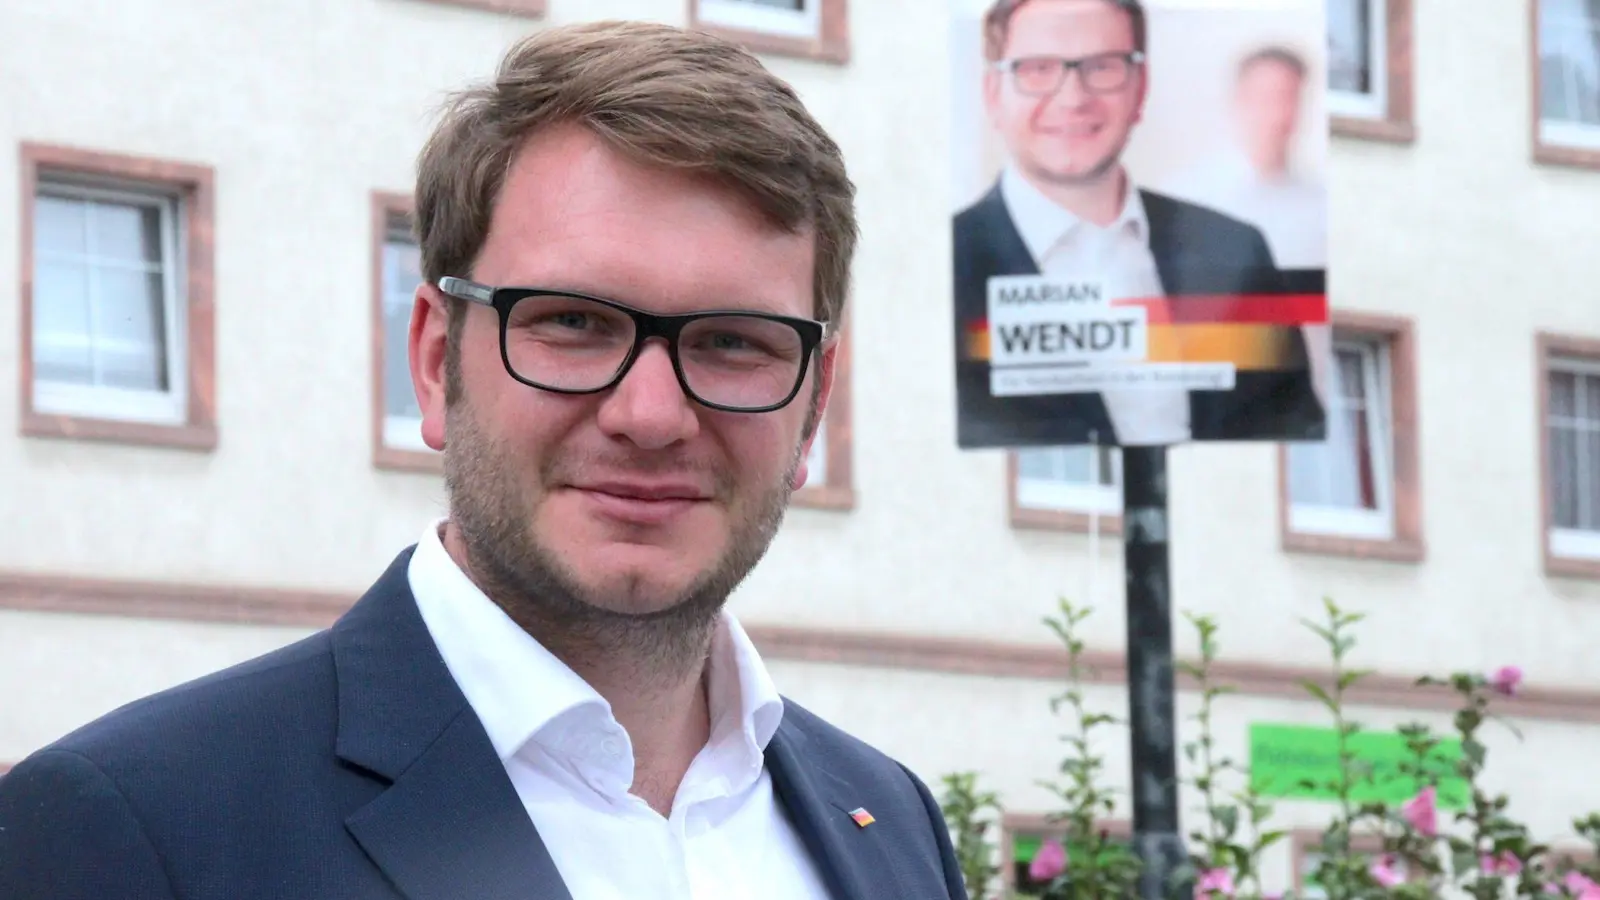 Bundestagswahl in Taucha: Fragen an Marian Wendt (CDU) (Foto: taucha-kompakt.de)